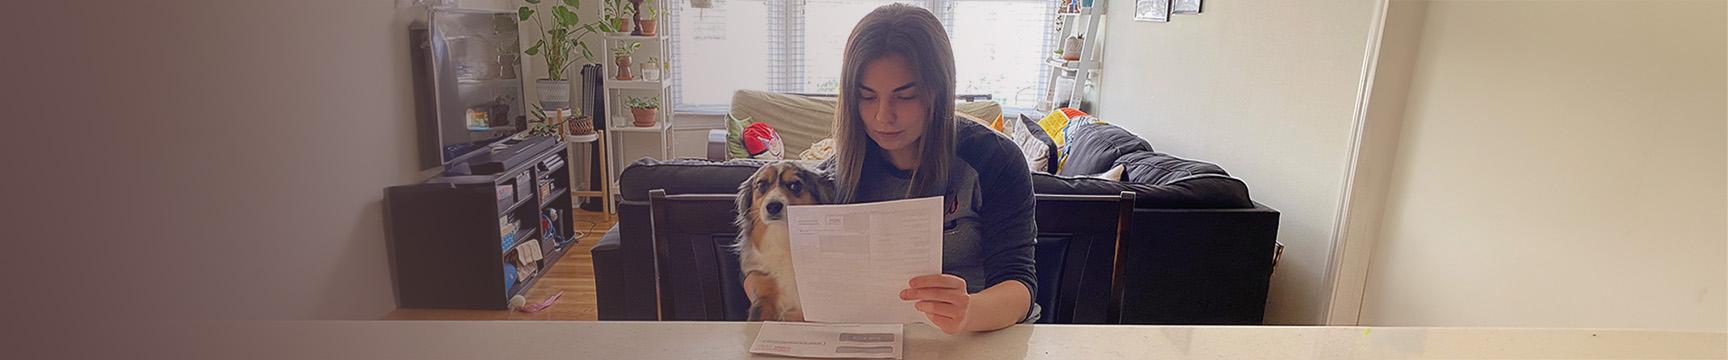 Phụ nữ với một con chó đọc hóa đơn của mình.